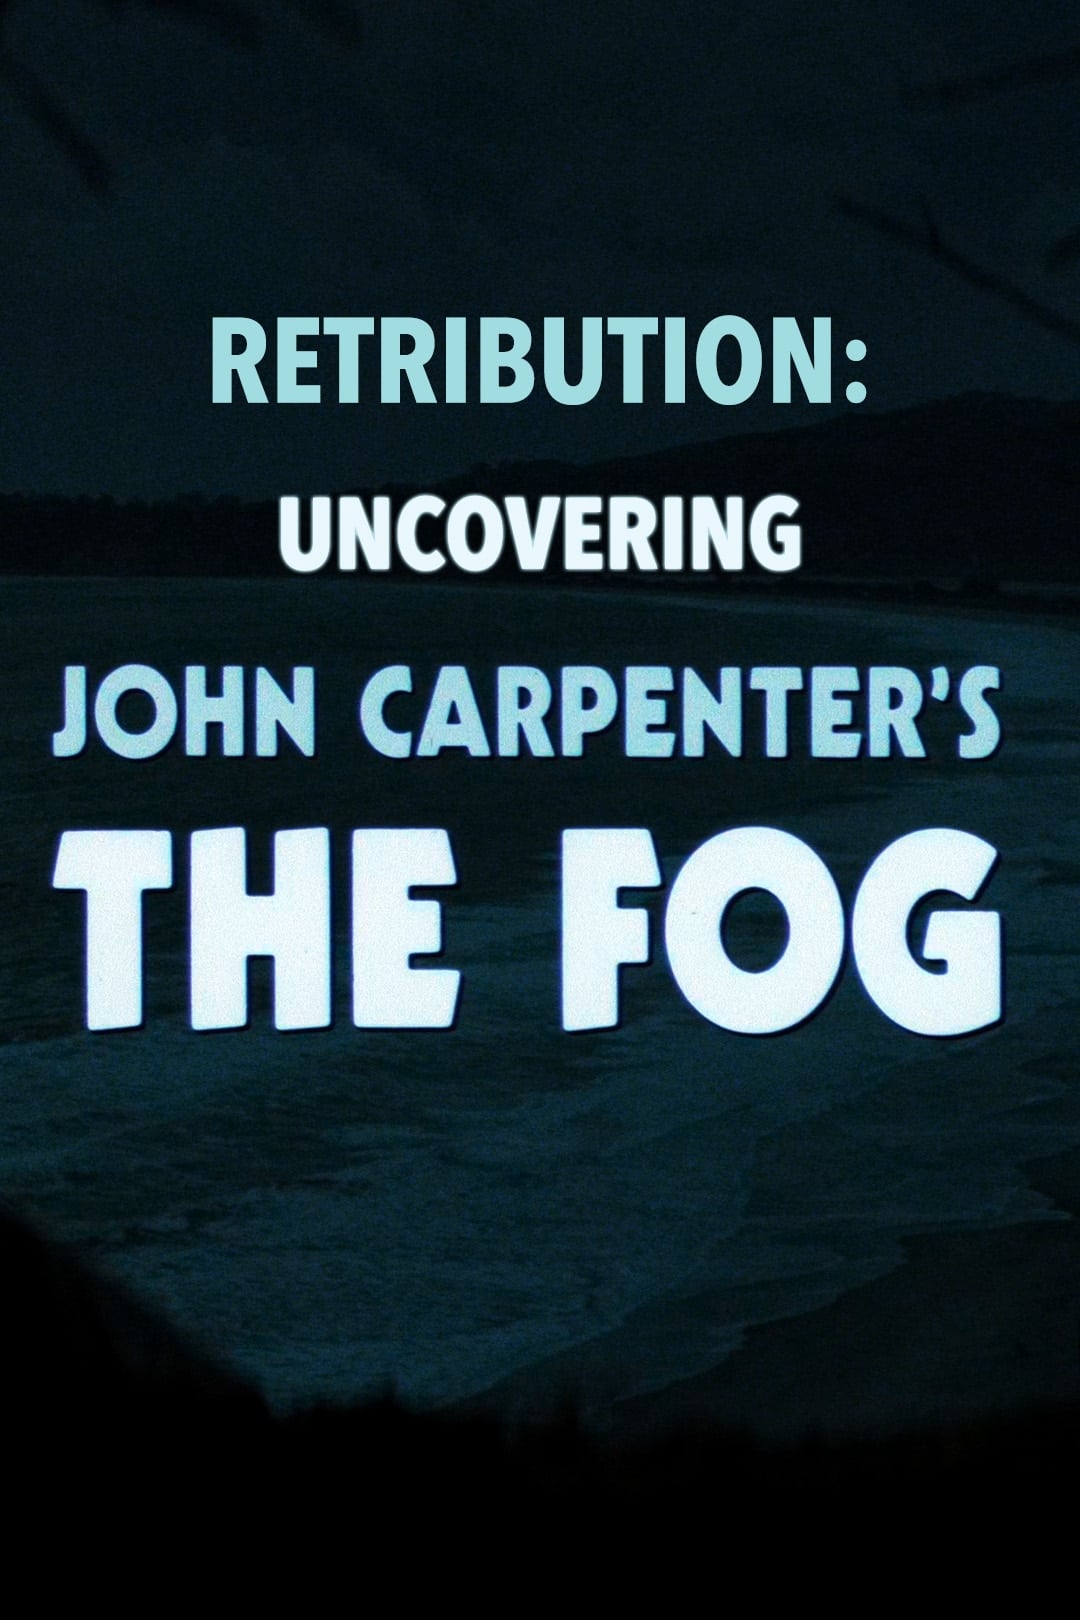 Retribution: Uncovering John Carpenter's The Fog (2018)